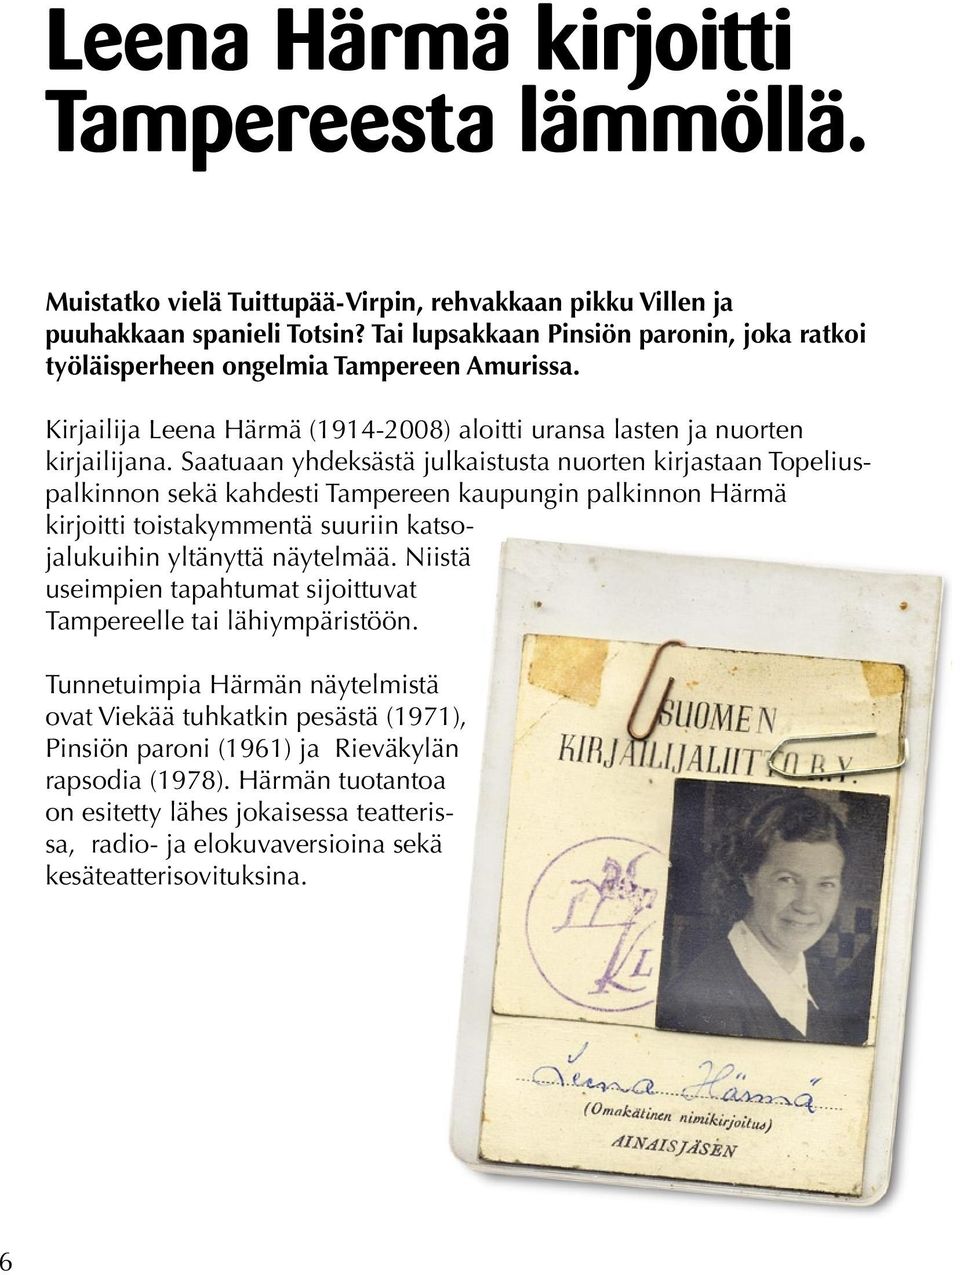 Saatuaan yhdeksästä julkaistusta nuorten kirjastaan Topeliuspalkinnon sekä kahdesti Tampereen kaupungin palkinnon Härmä kirjoitti toistakymmentä suuriin katsojalukuihin yltänyttä näytelmää.